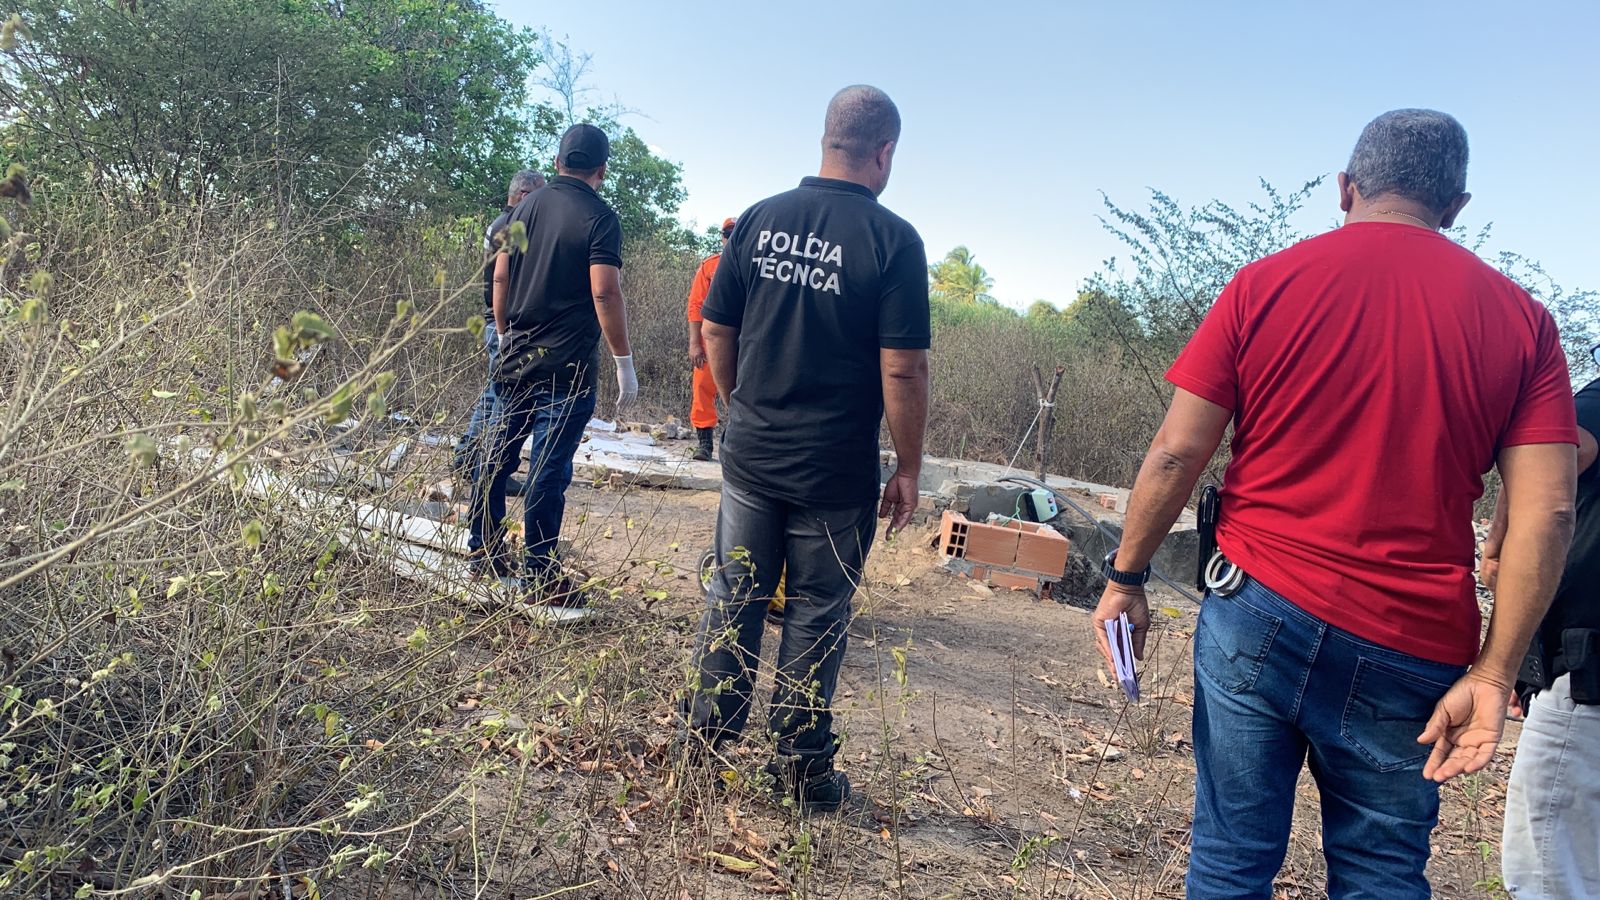 Polícia encontra ossada humana em zona rural de Feira de Santana 